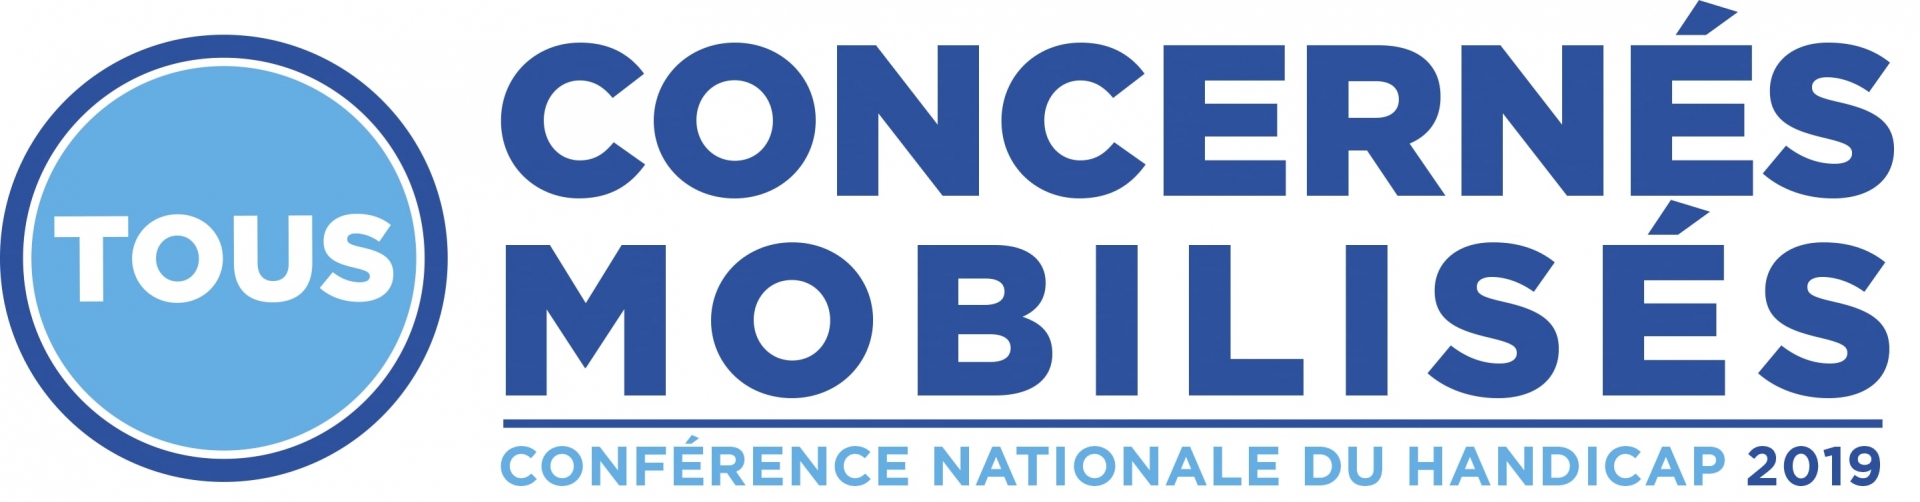 Logo de la Conférence National du handicap, jpg